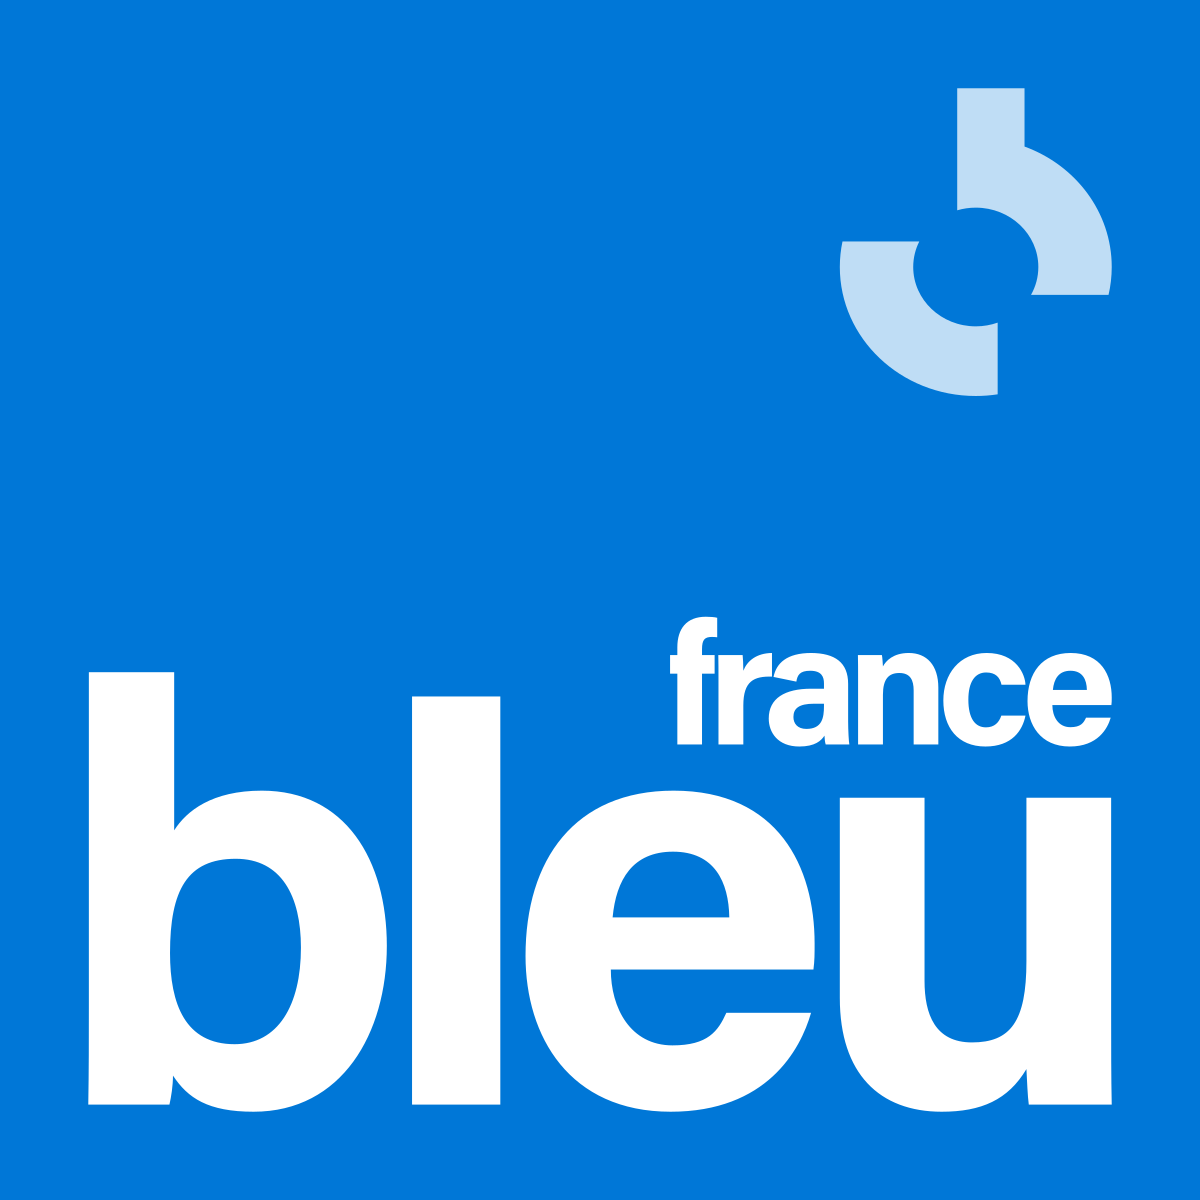 CODINER logo France bleu pour l'application CODINER, de vente à emporter, de livraison de repas, de réservation de table